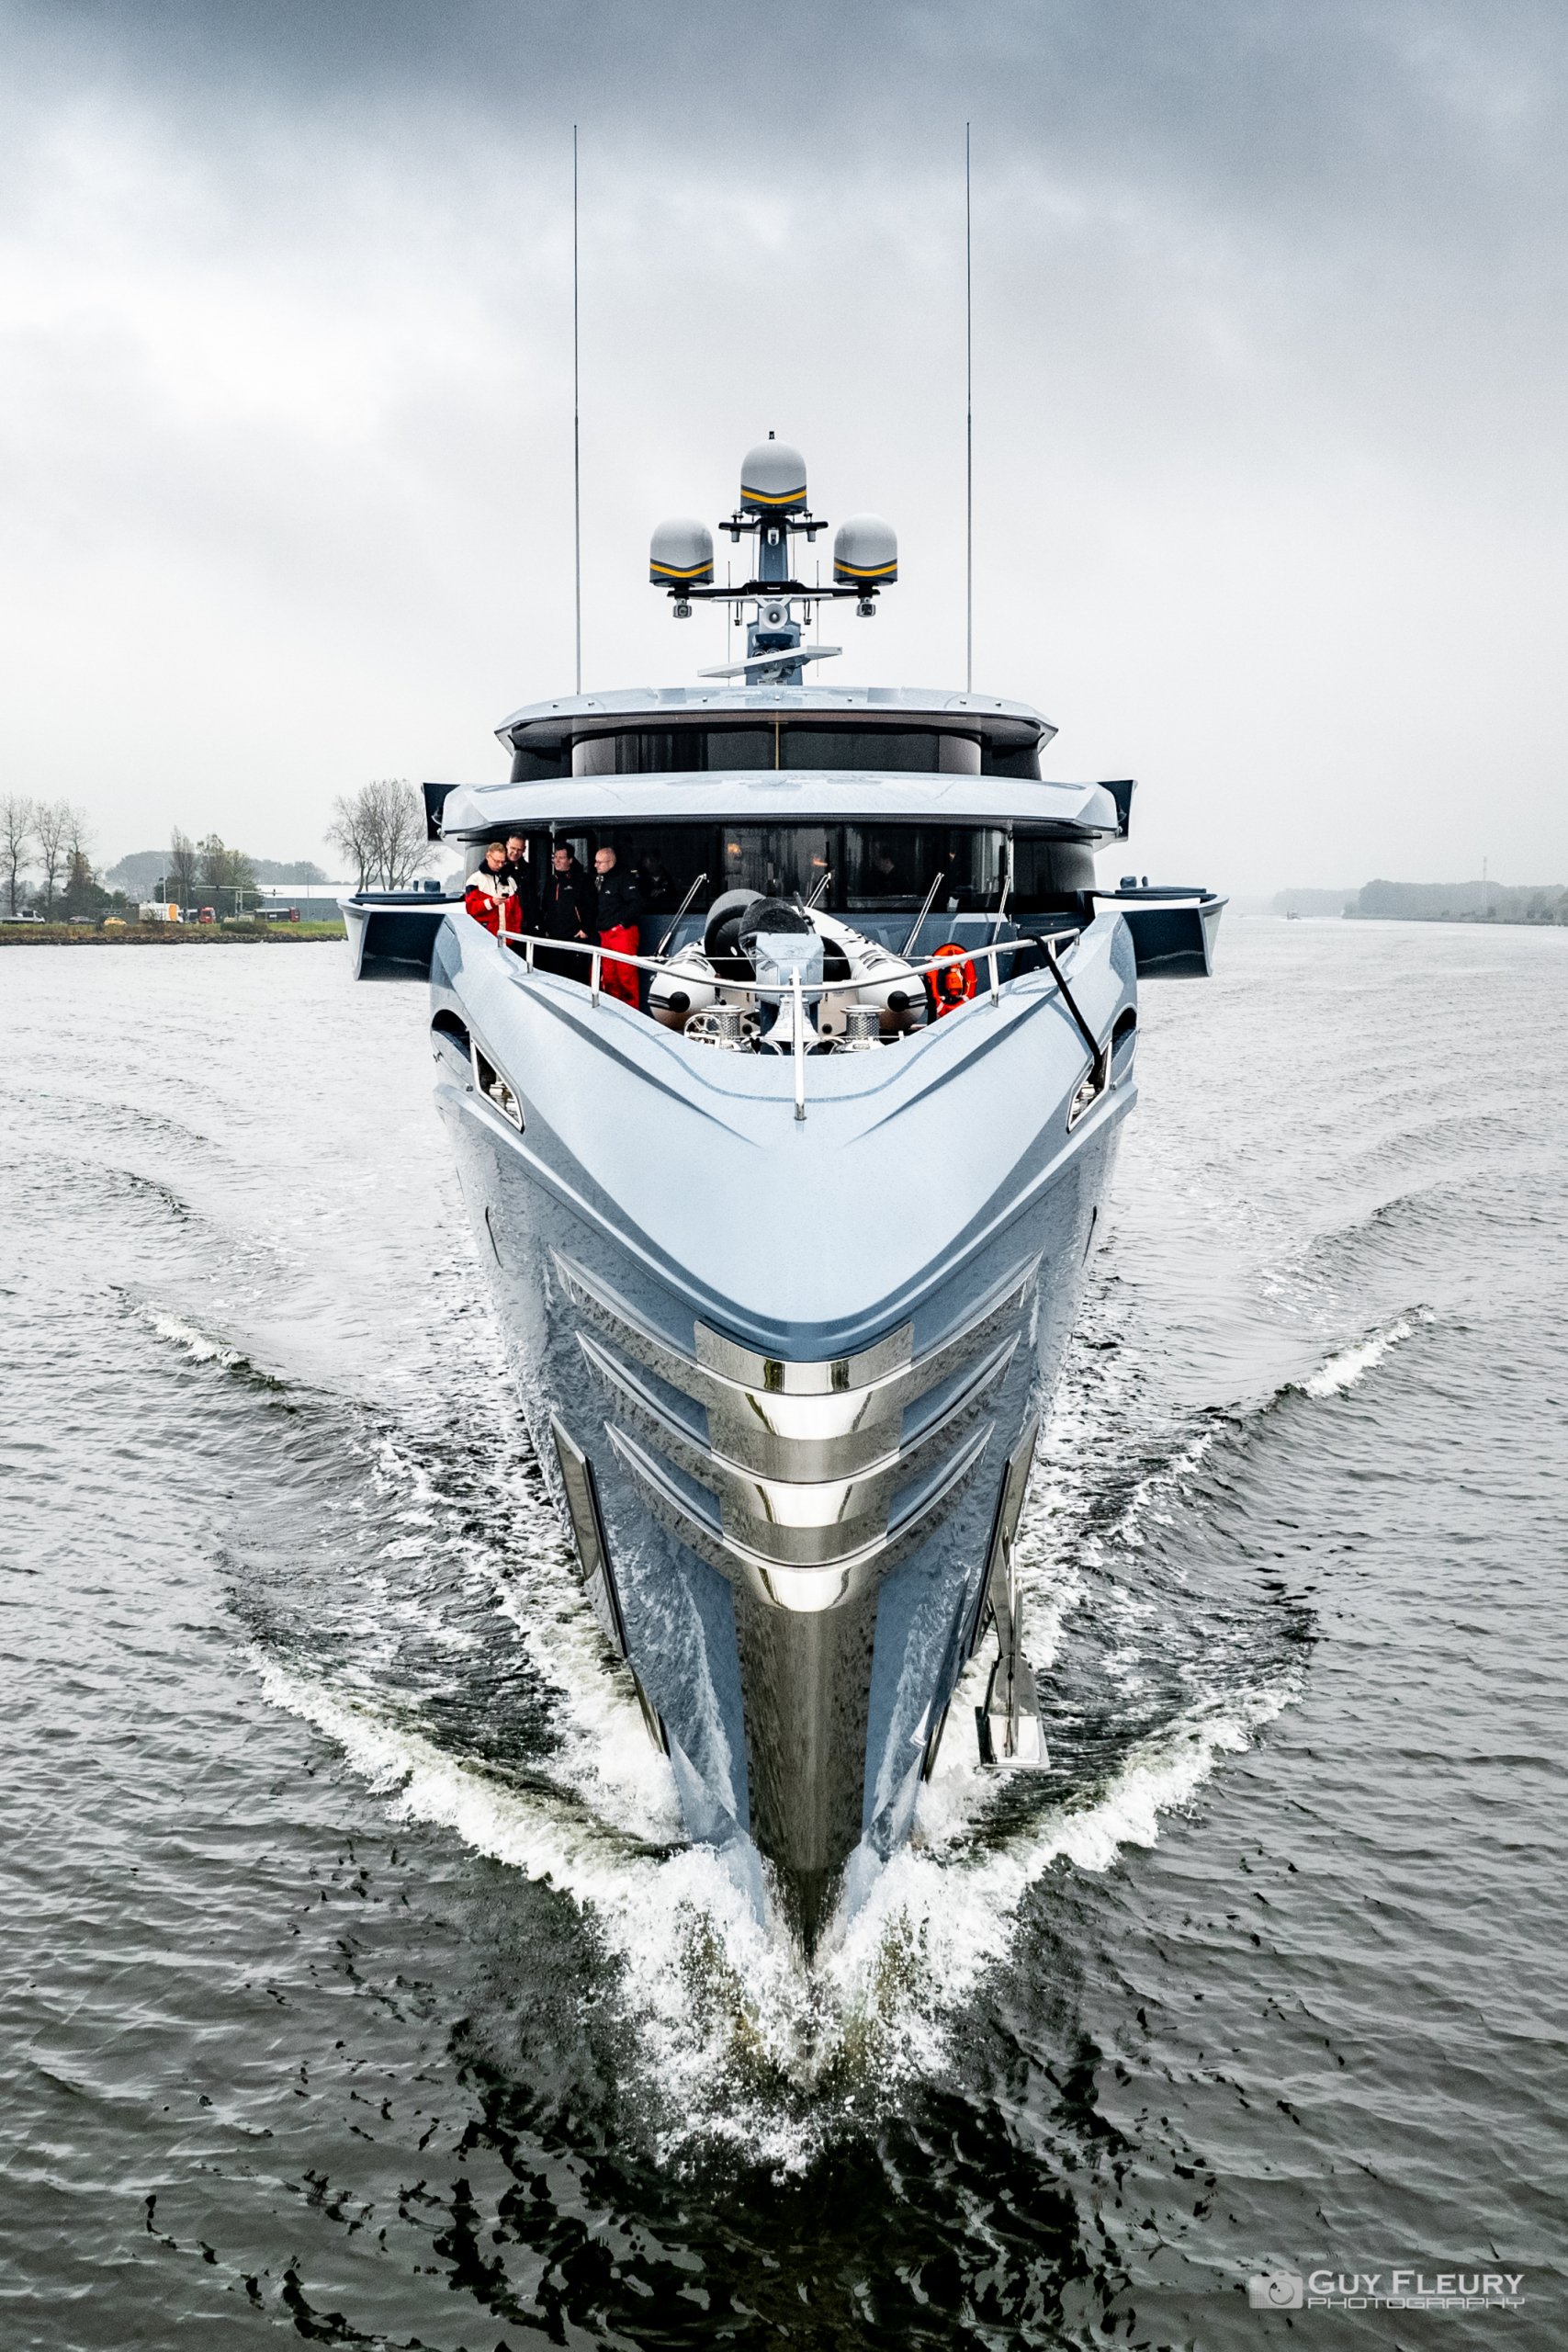 PHI Yacht • Royal Huisman • 2021 • Propriétaire Millionnaire russe